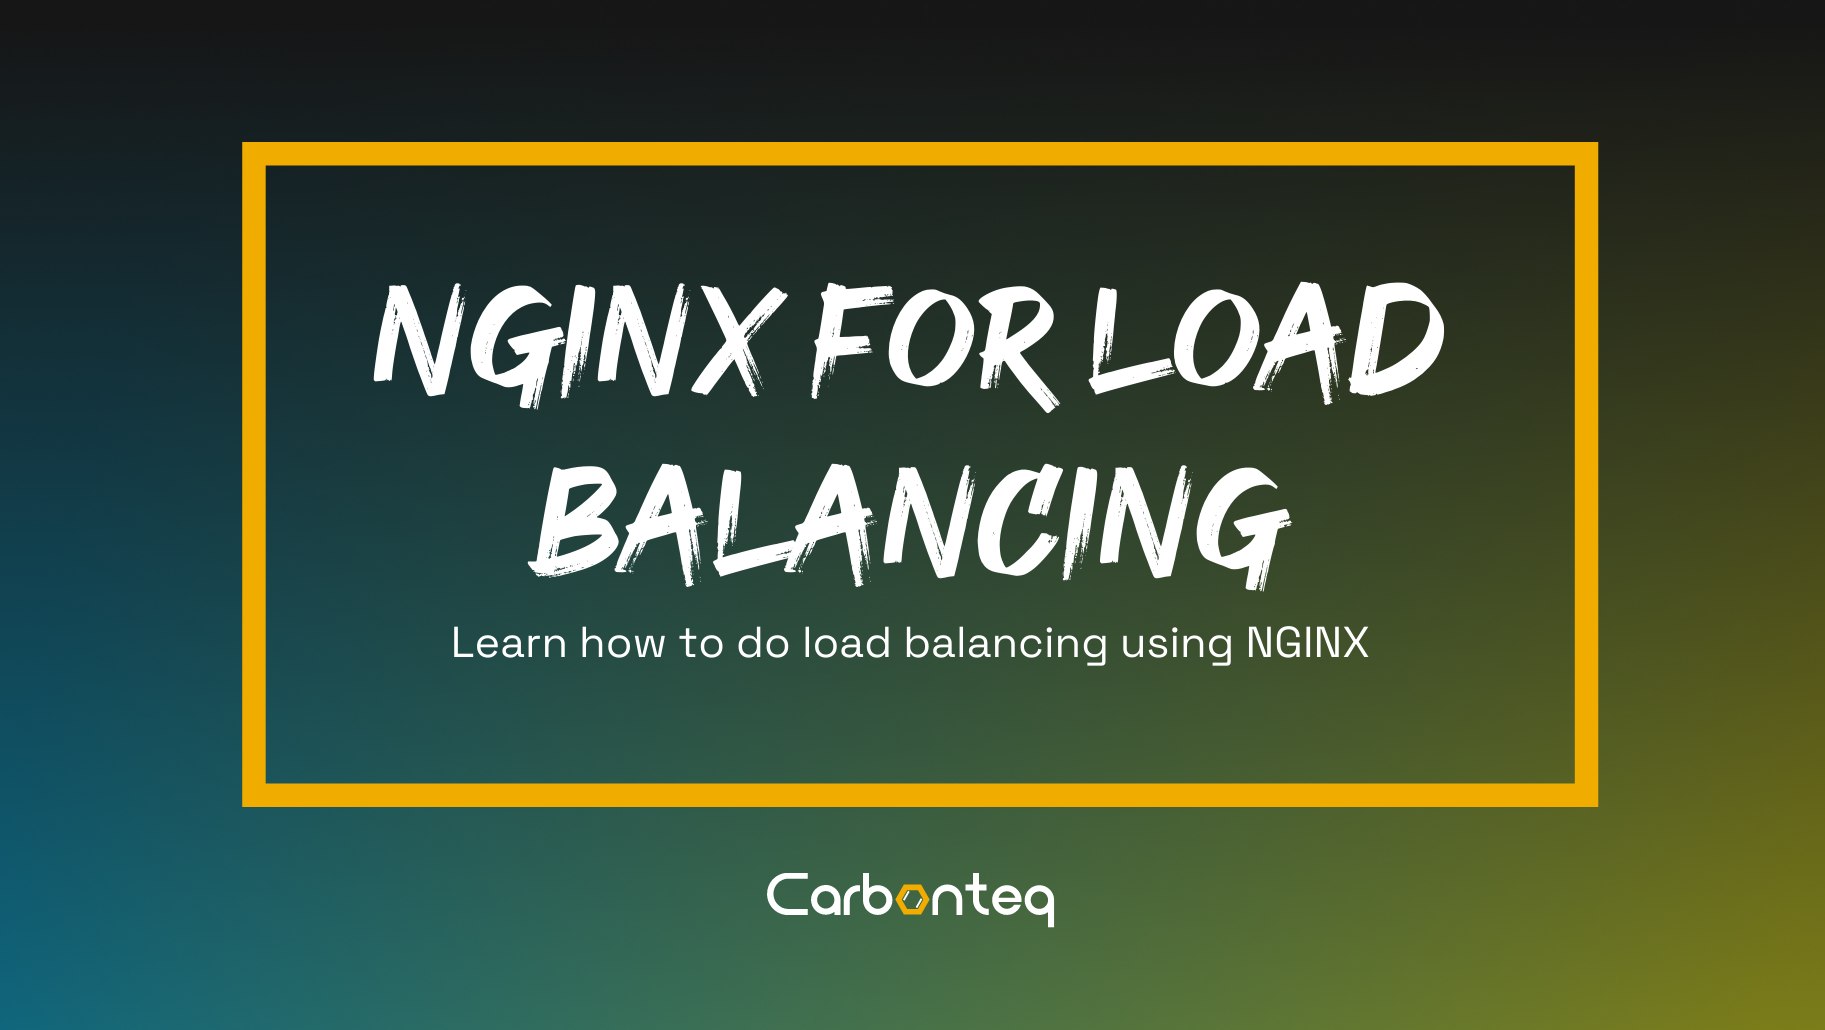 Why Use Nginx for Load Balancing